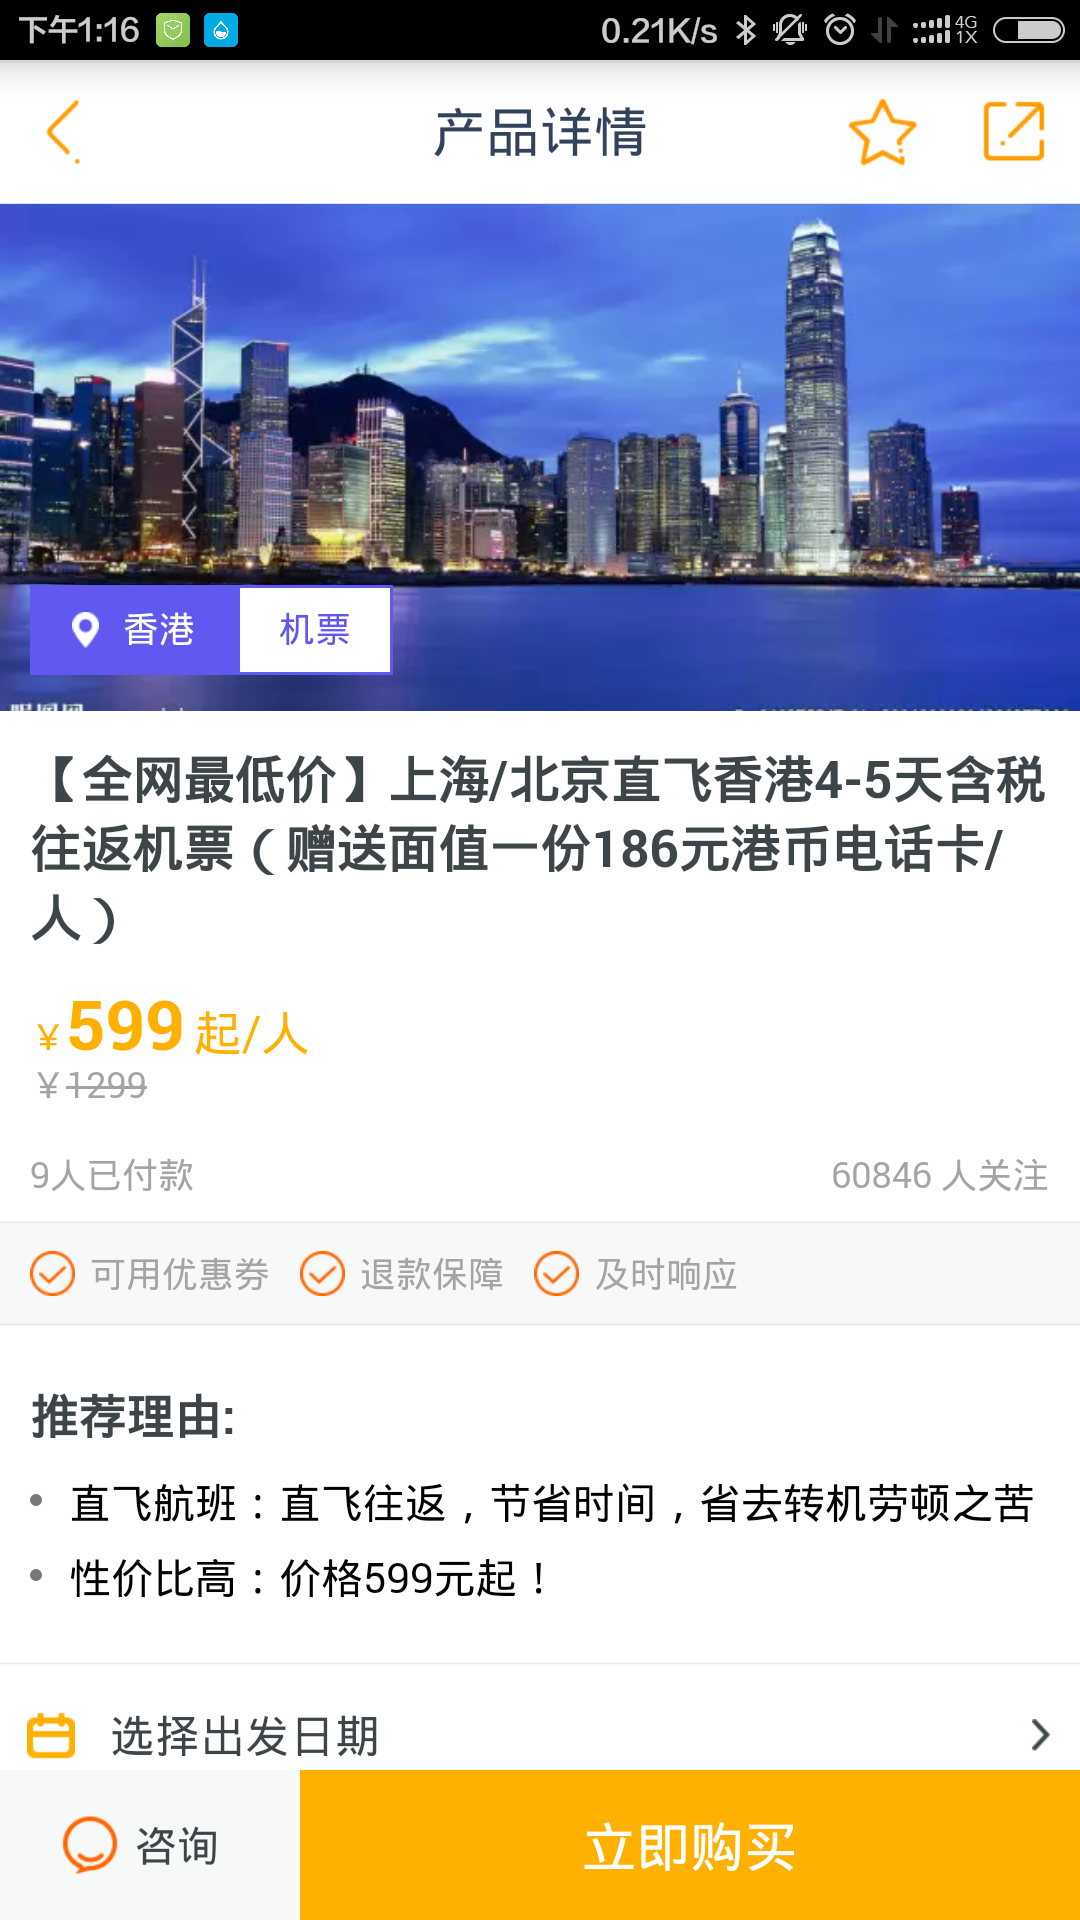 马蜂窝上到上海往返香港的机票才599,这个价格